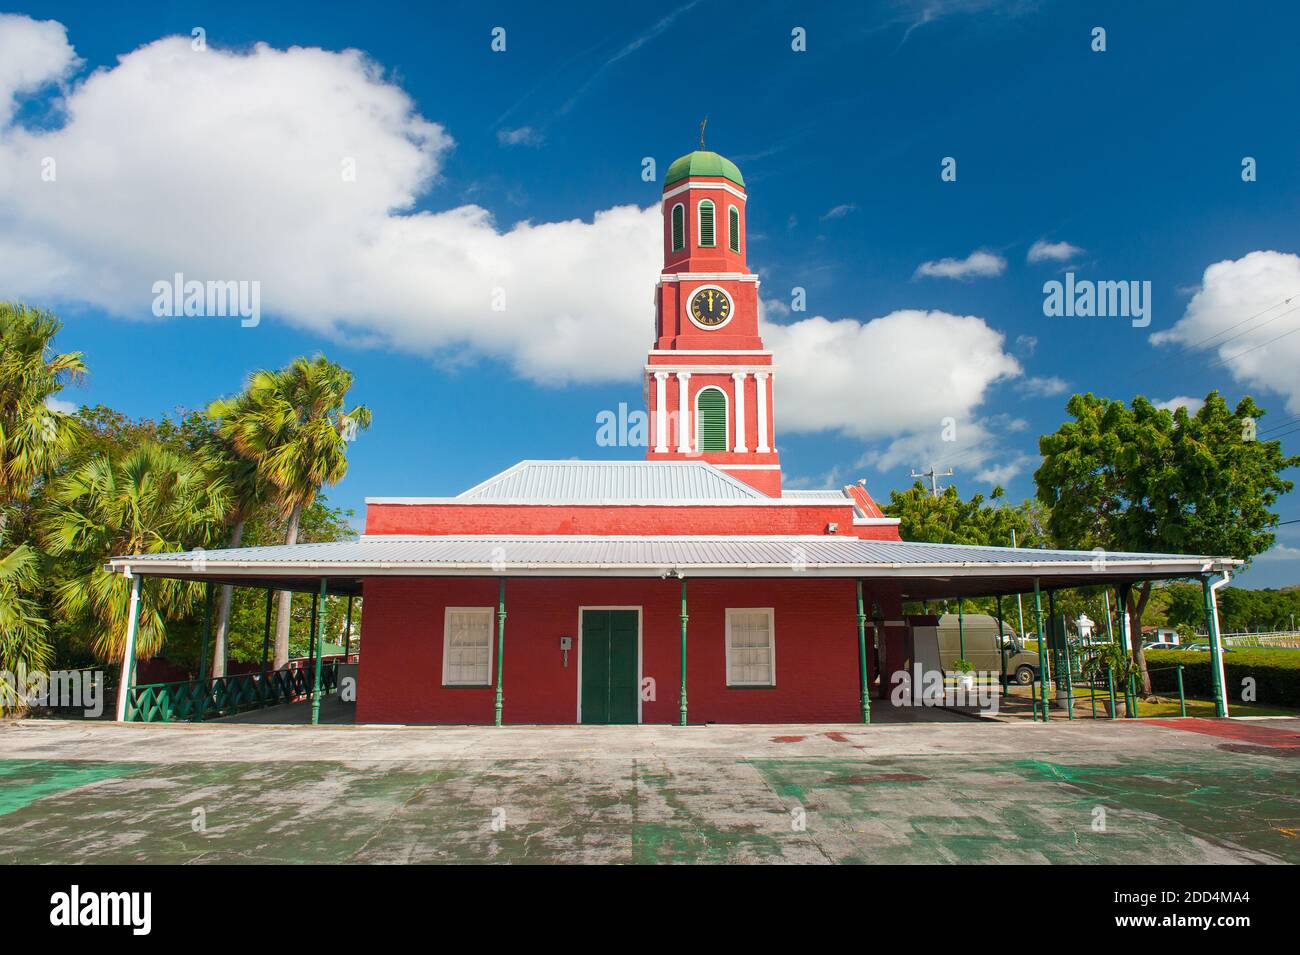 Célèbre tour de l'horloge rouge sur le poste de garde principal à la Garnison Savannah. Zone historique de la garnison de l'UNESCO Bridgetown, Barbade Banque D'Images